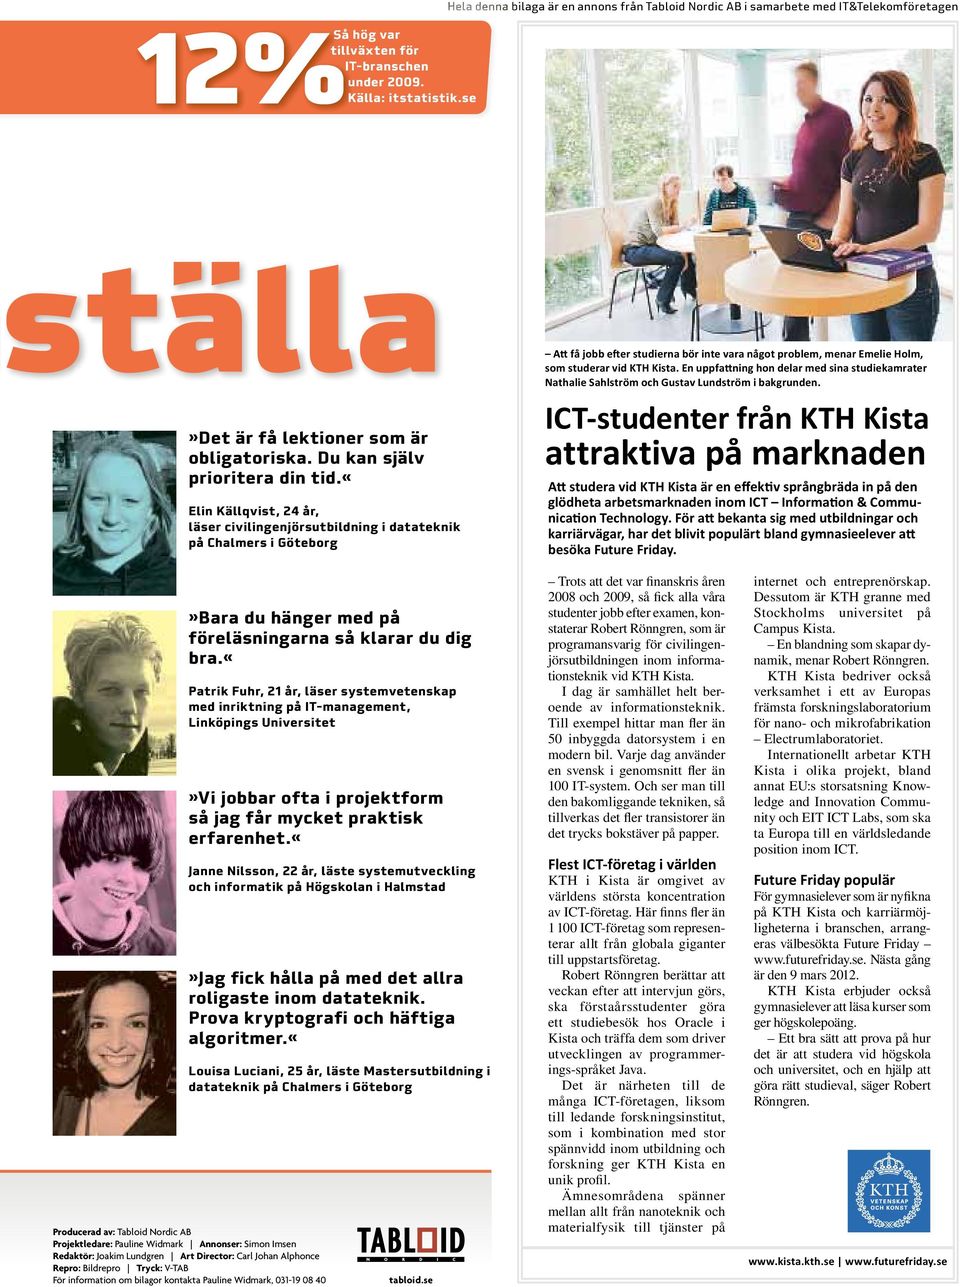 «elin Källqvist, 24 år, läser civilingenjörsutbildning i datateknik på Chalmers i Göteborg Att få jobb efter studierna bör inte vara något problem, menar Emelie Holm, som studerar vid KTH Kista.